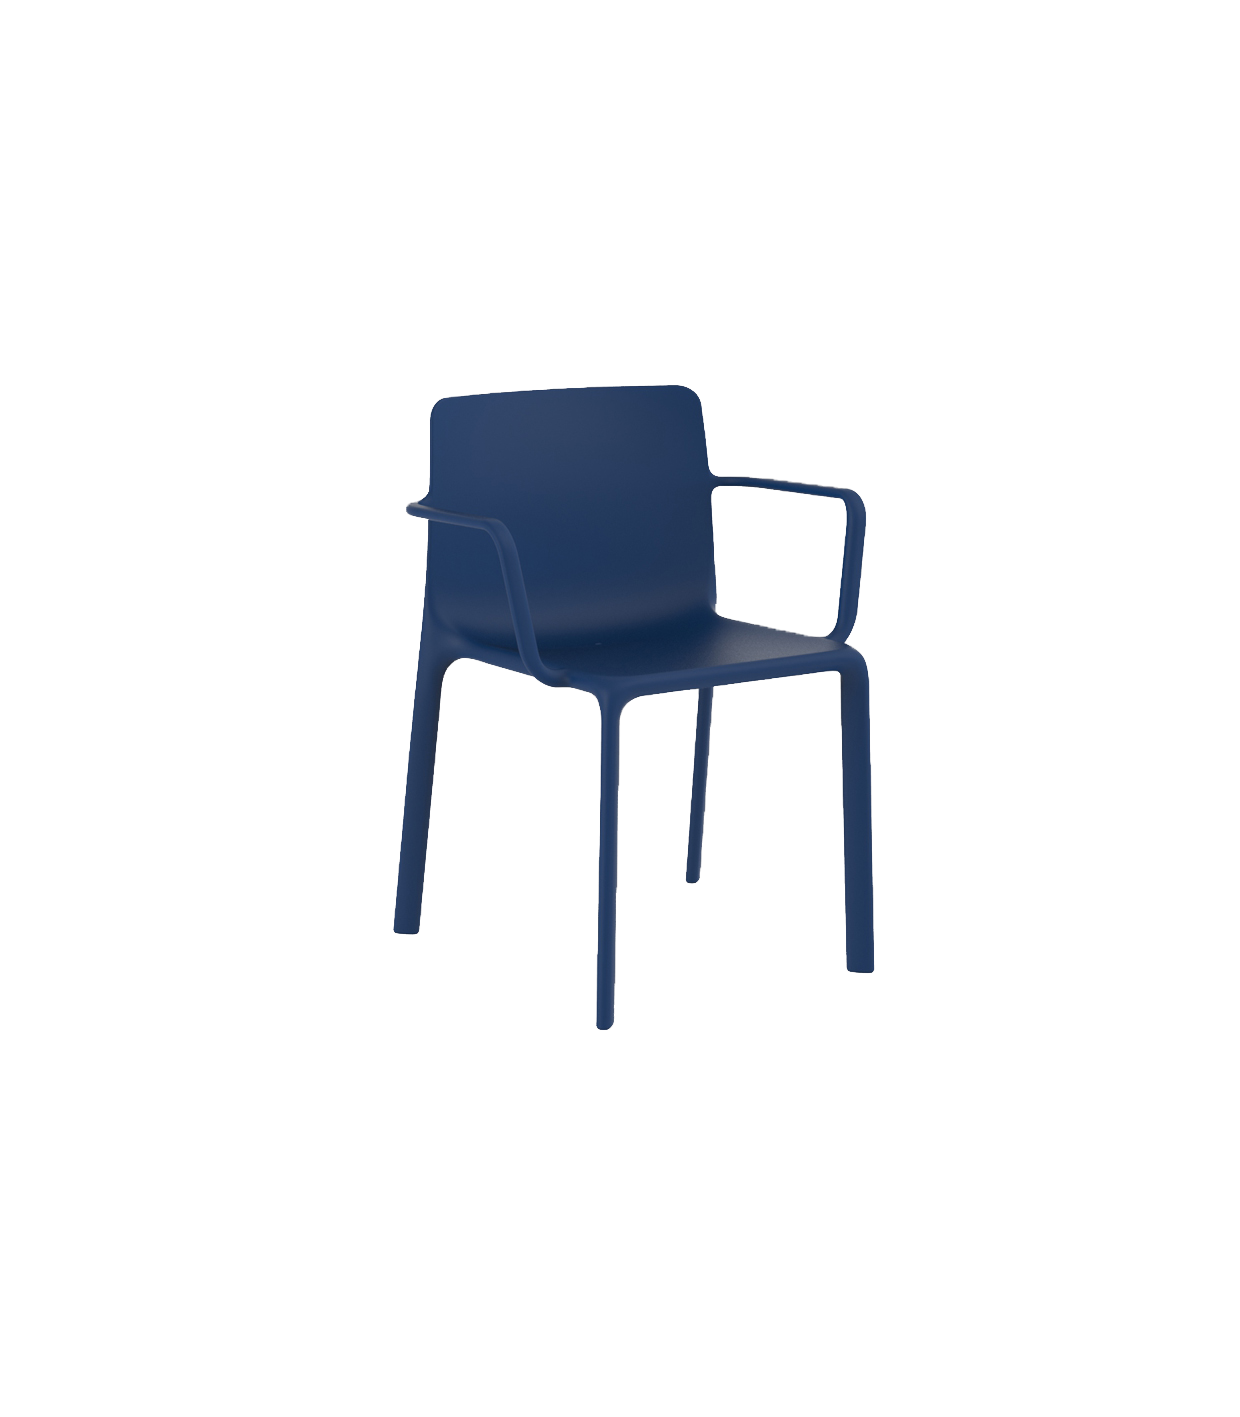 silla azul para un evento